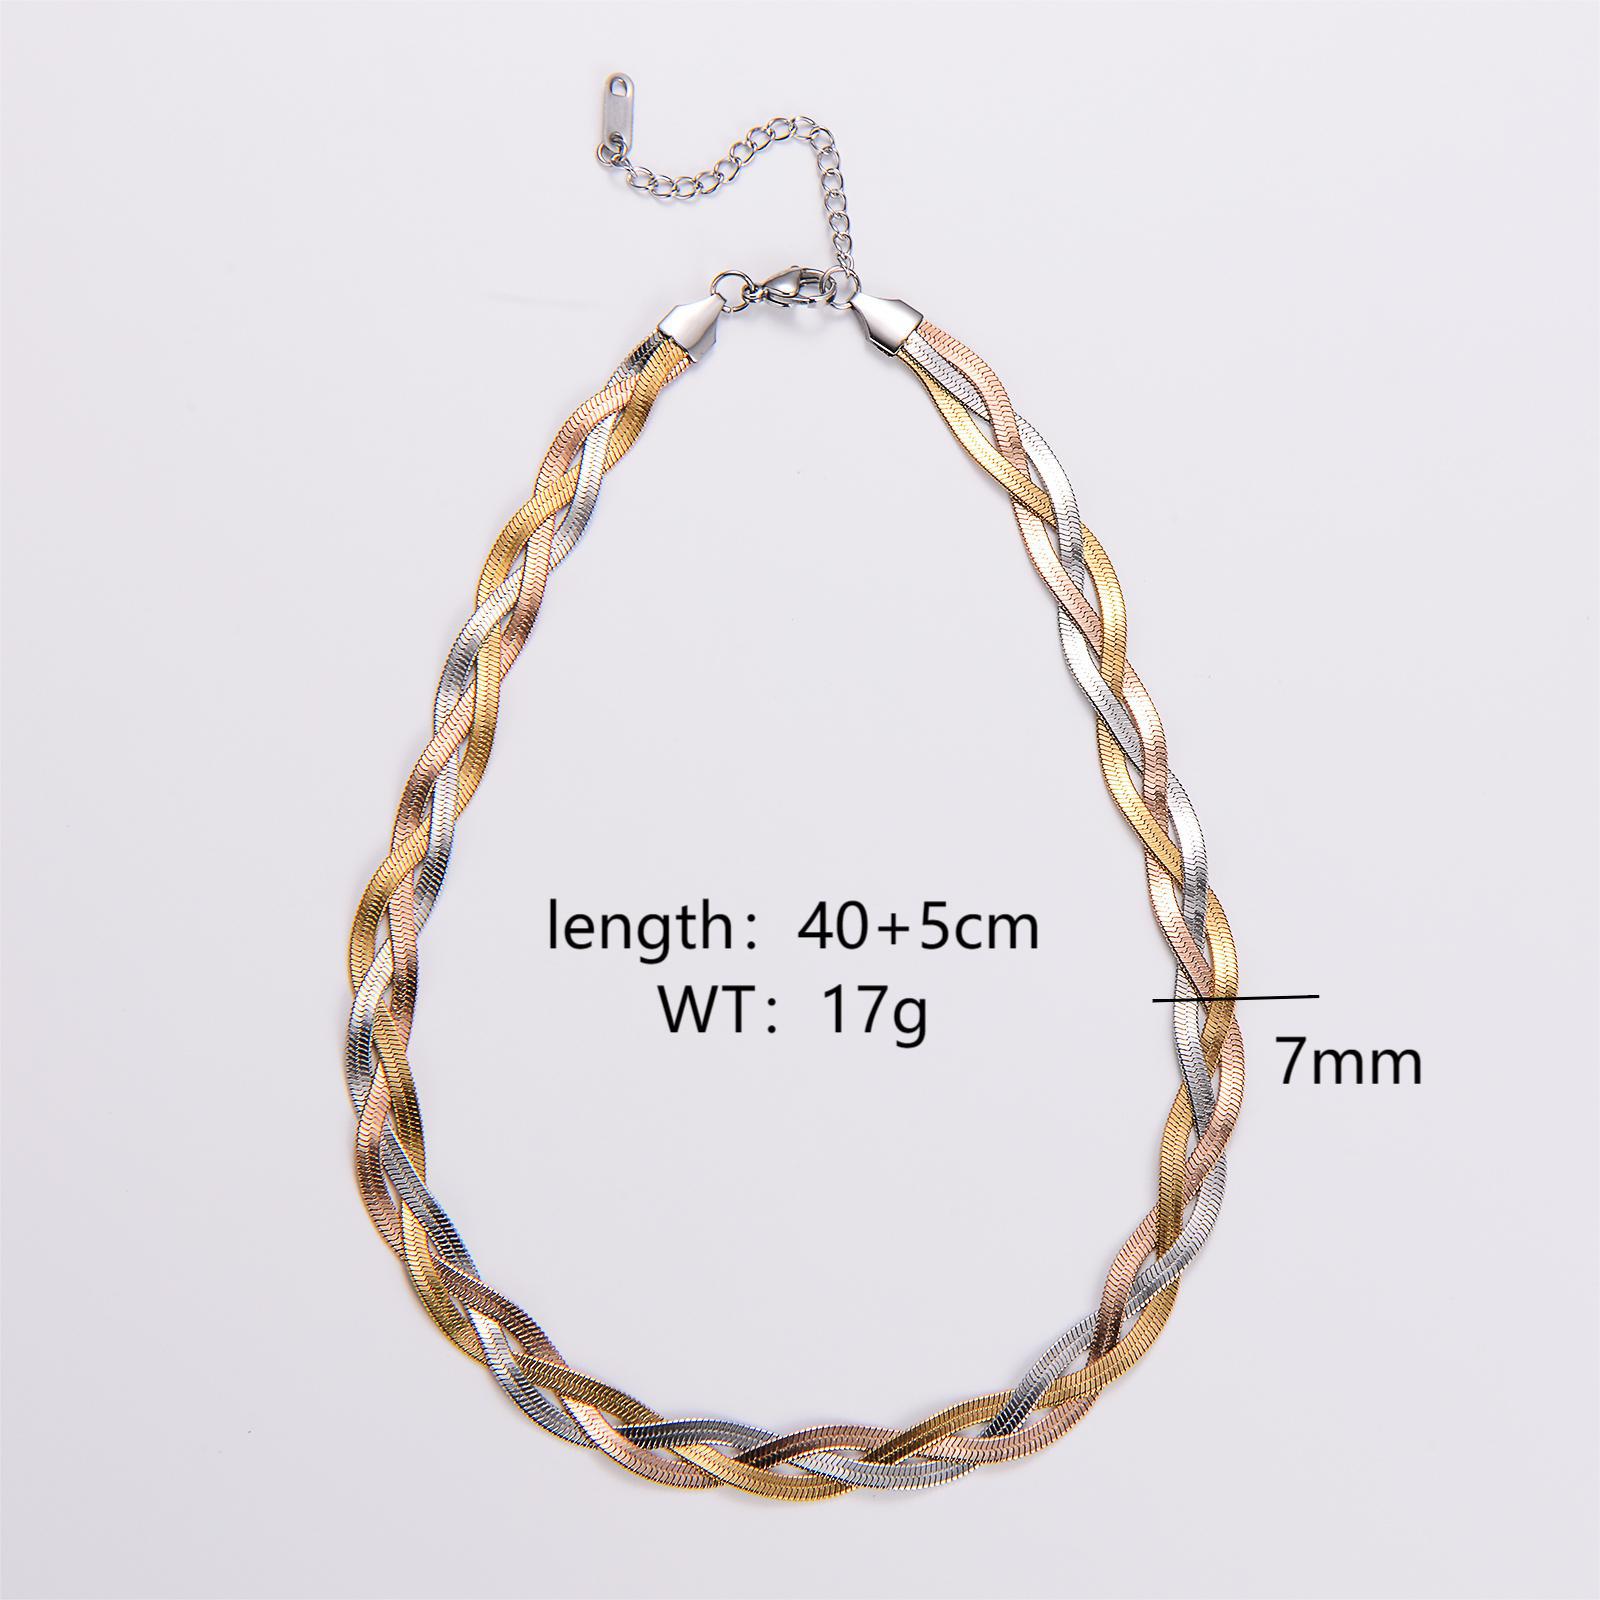 3:Three-color necklace